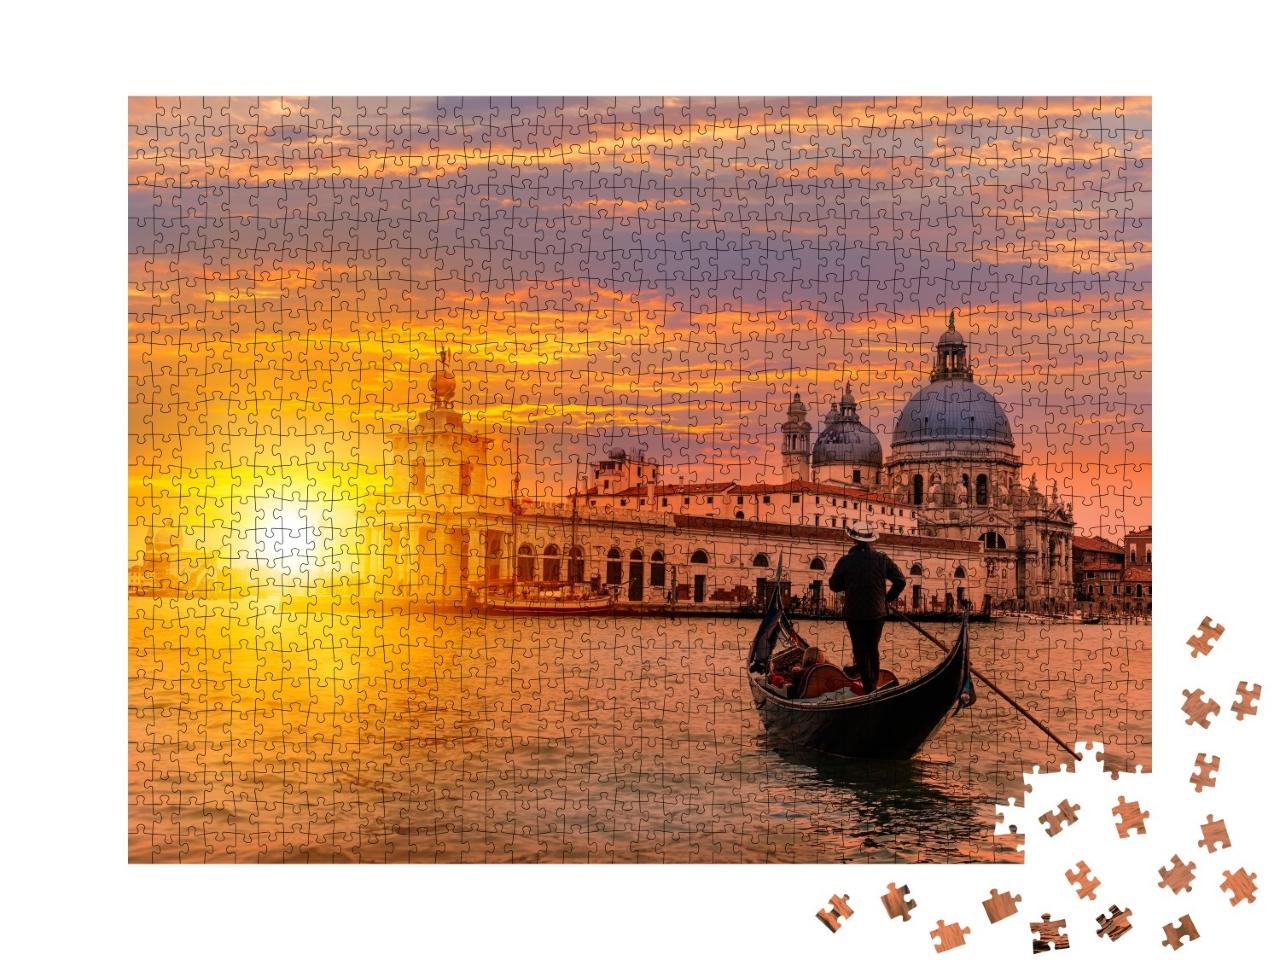 Puzzle de 1000 pièces « Gondolier avec gondole sur un canal, Venise, Italie »